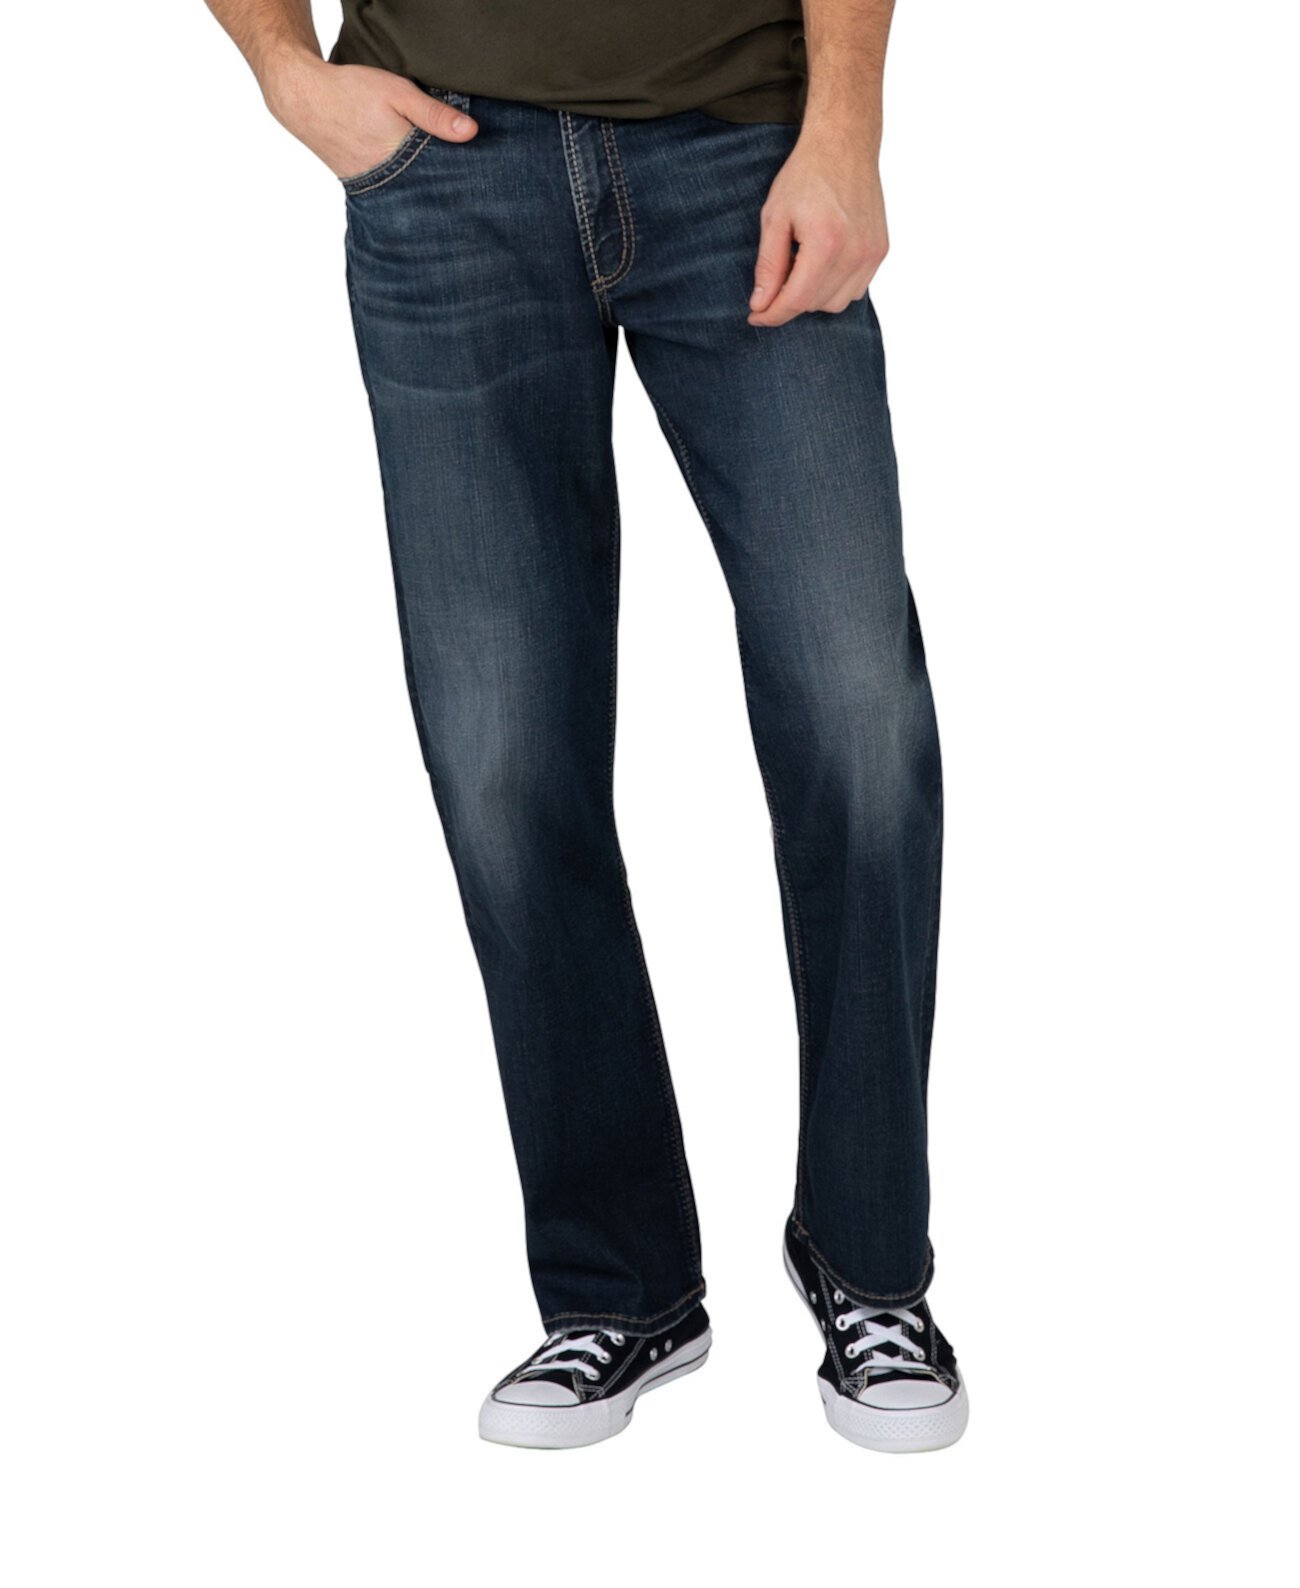 Мужские прямые джинсы свободного кроя Gordie с прямыми штанинами Silver Jeans Co.